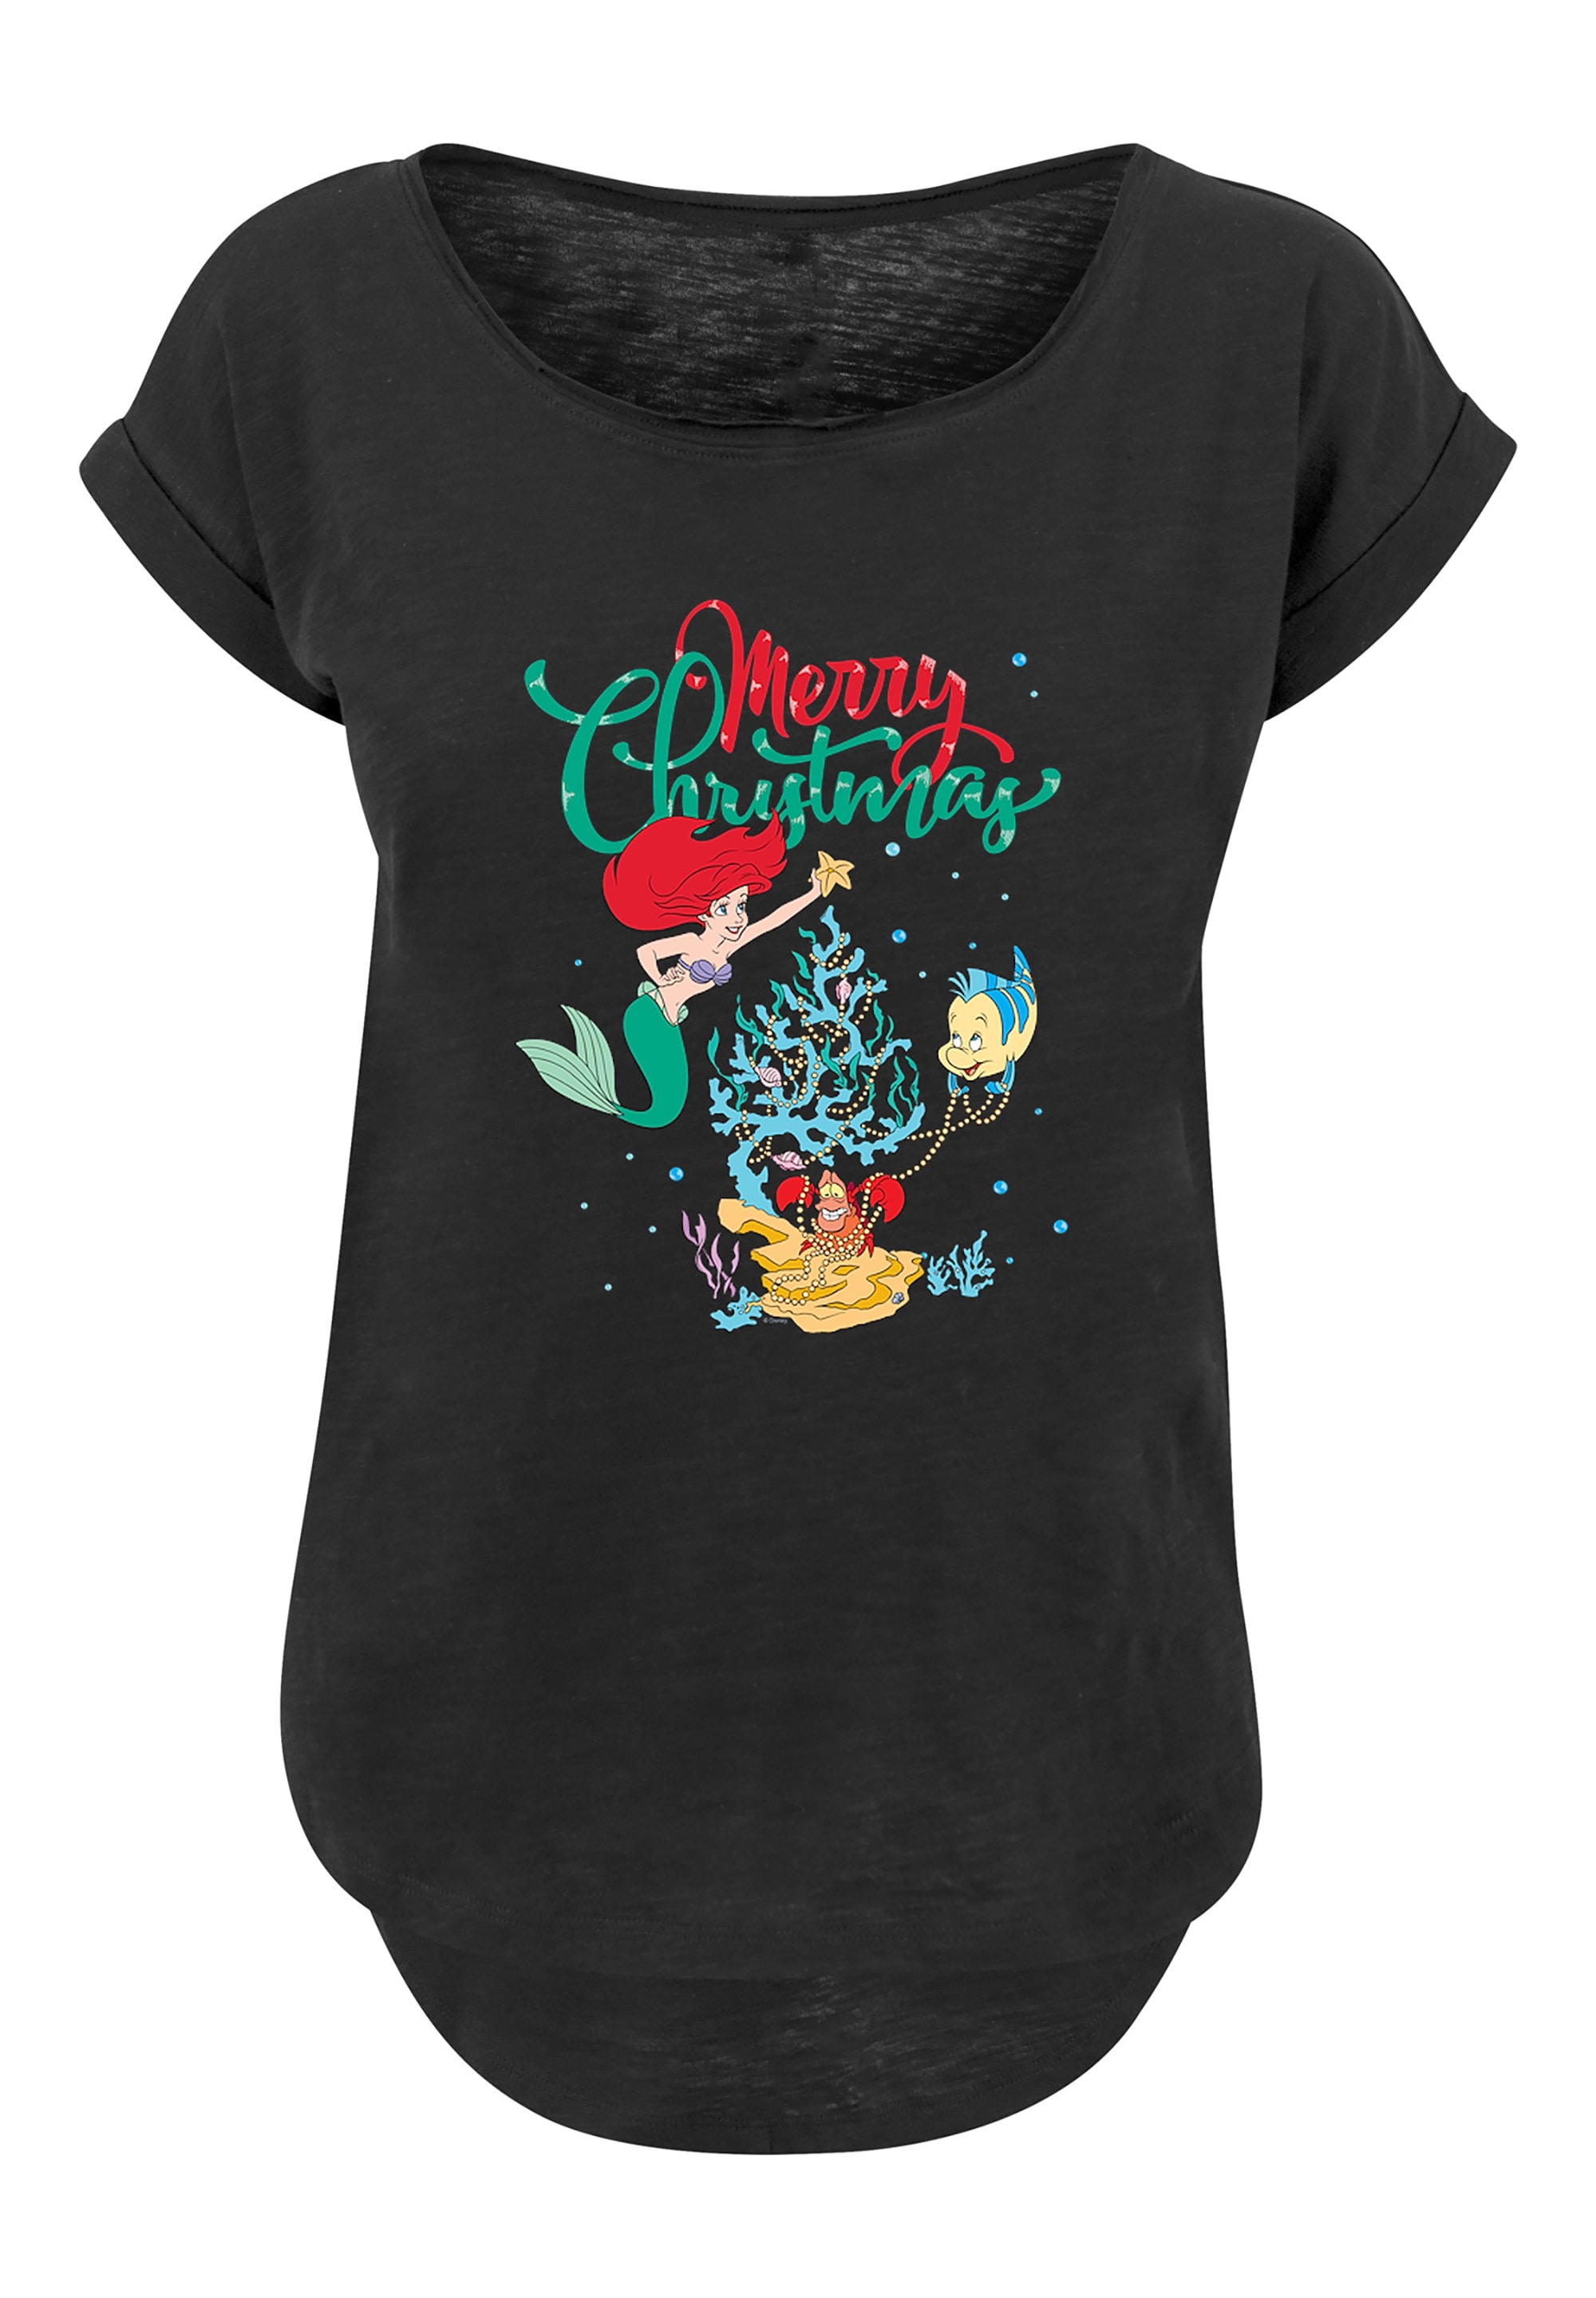 die shoppen Arielle T-Shirt Merry walking Christmas«, Print F4NT4STIC I\'m Meerjungfrau »Disney |